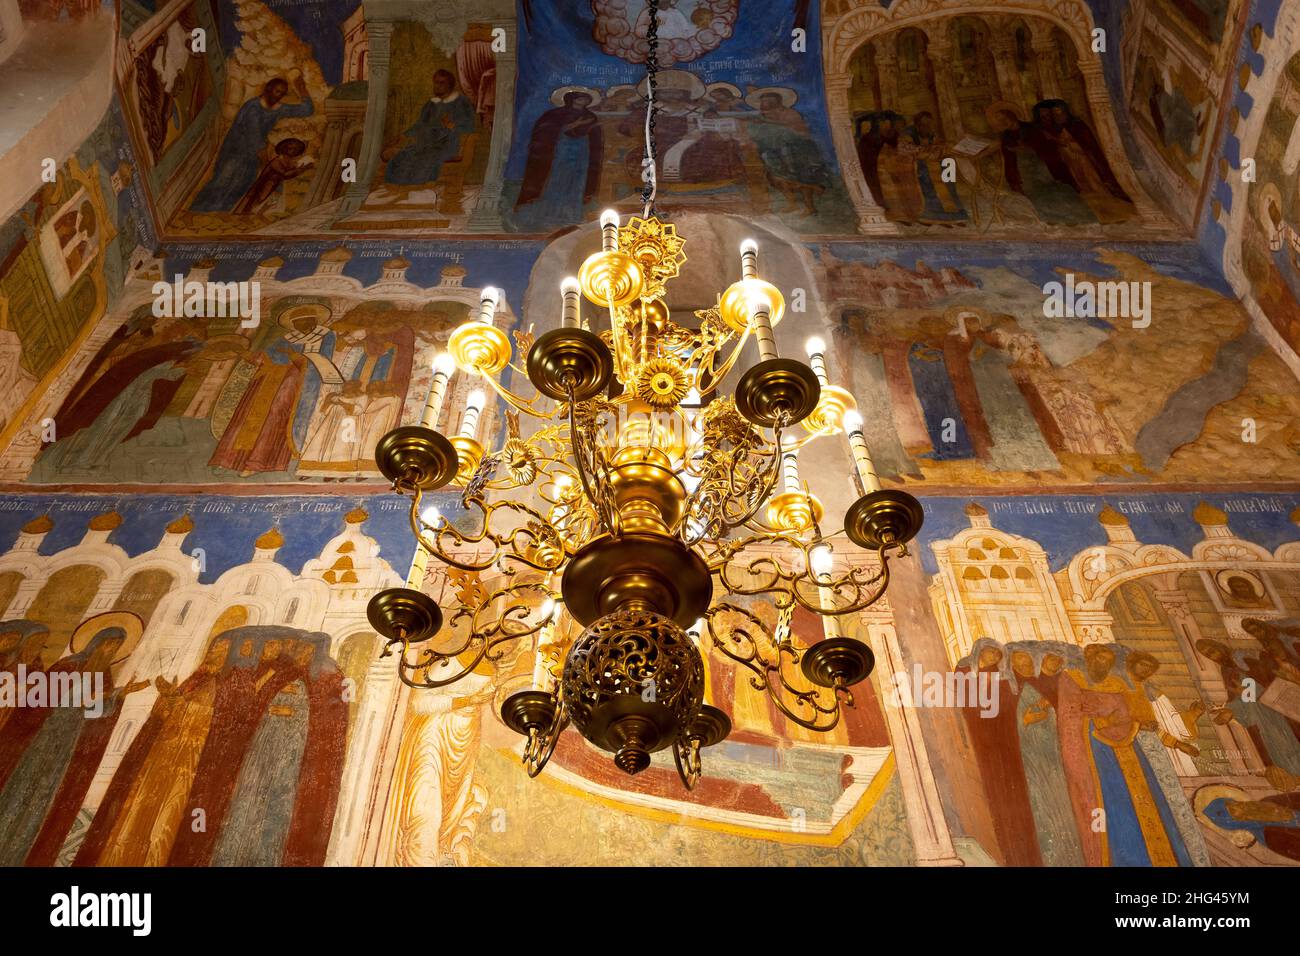 Susdal, Russland - 24. September 2019: Fresken an der Decke der Verklärung-Kathedrale im Kloster Spaso-Evfimie mit Kronleuchter in Suz Stockfoto